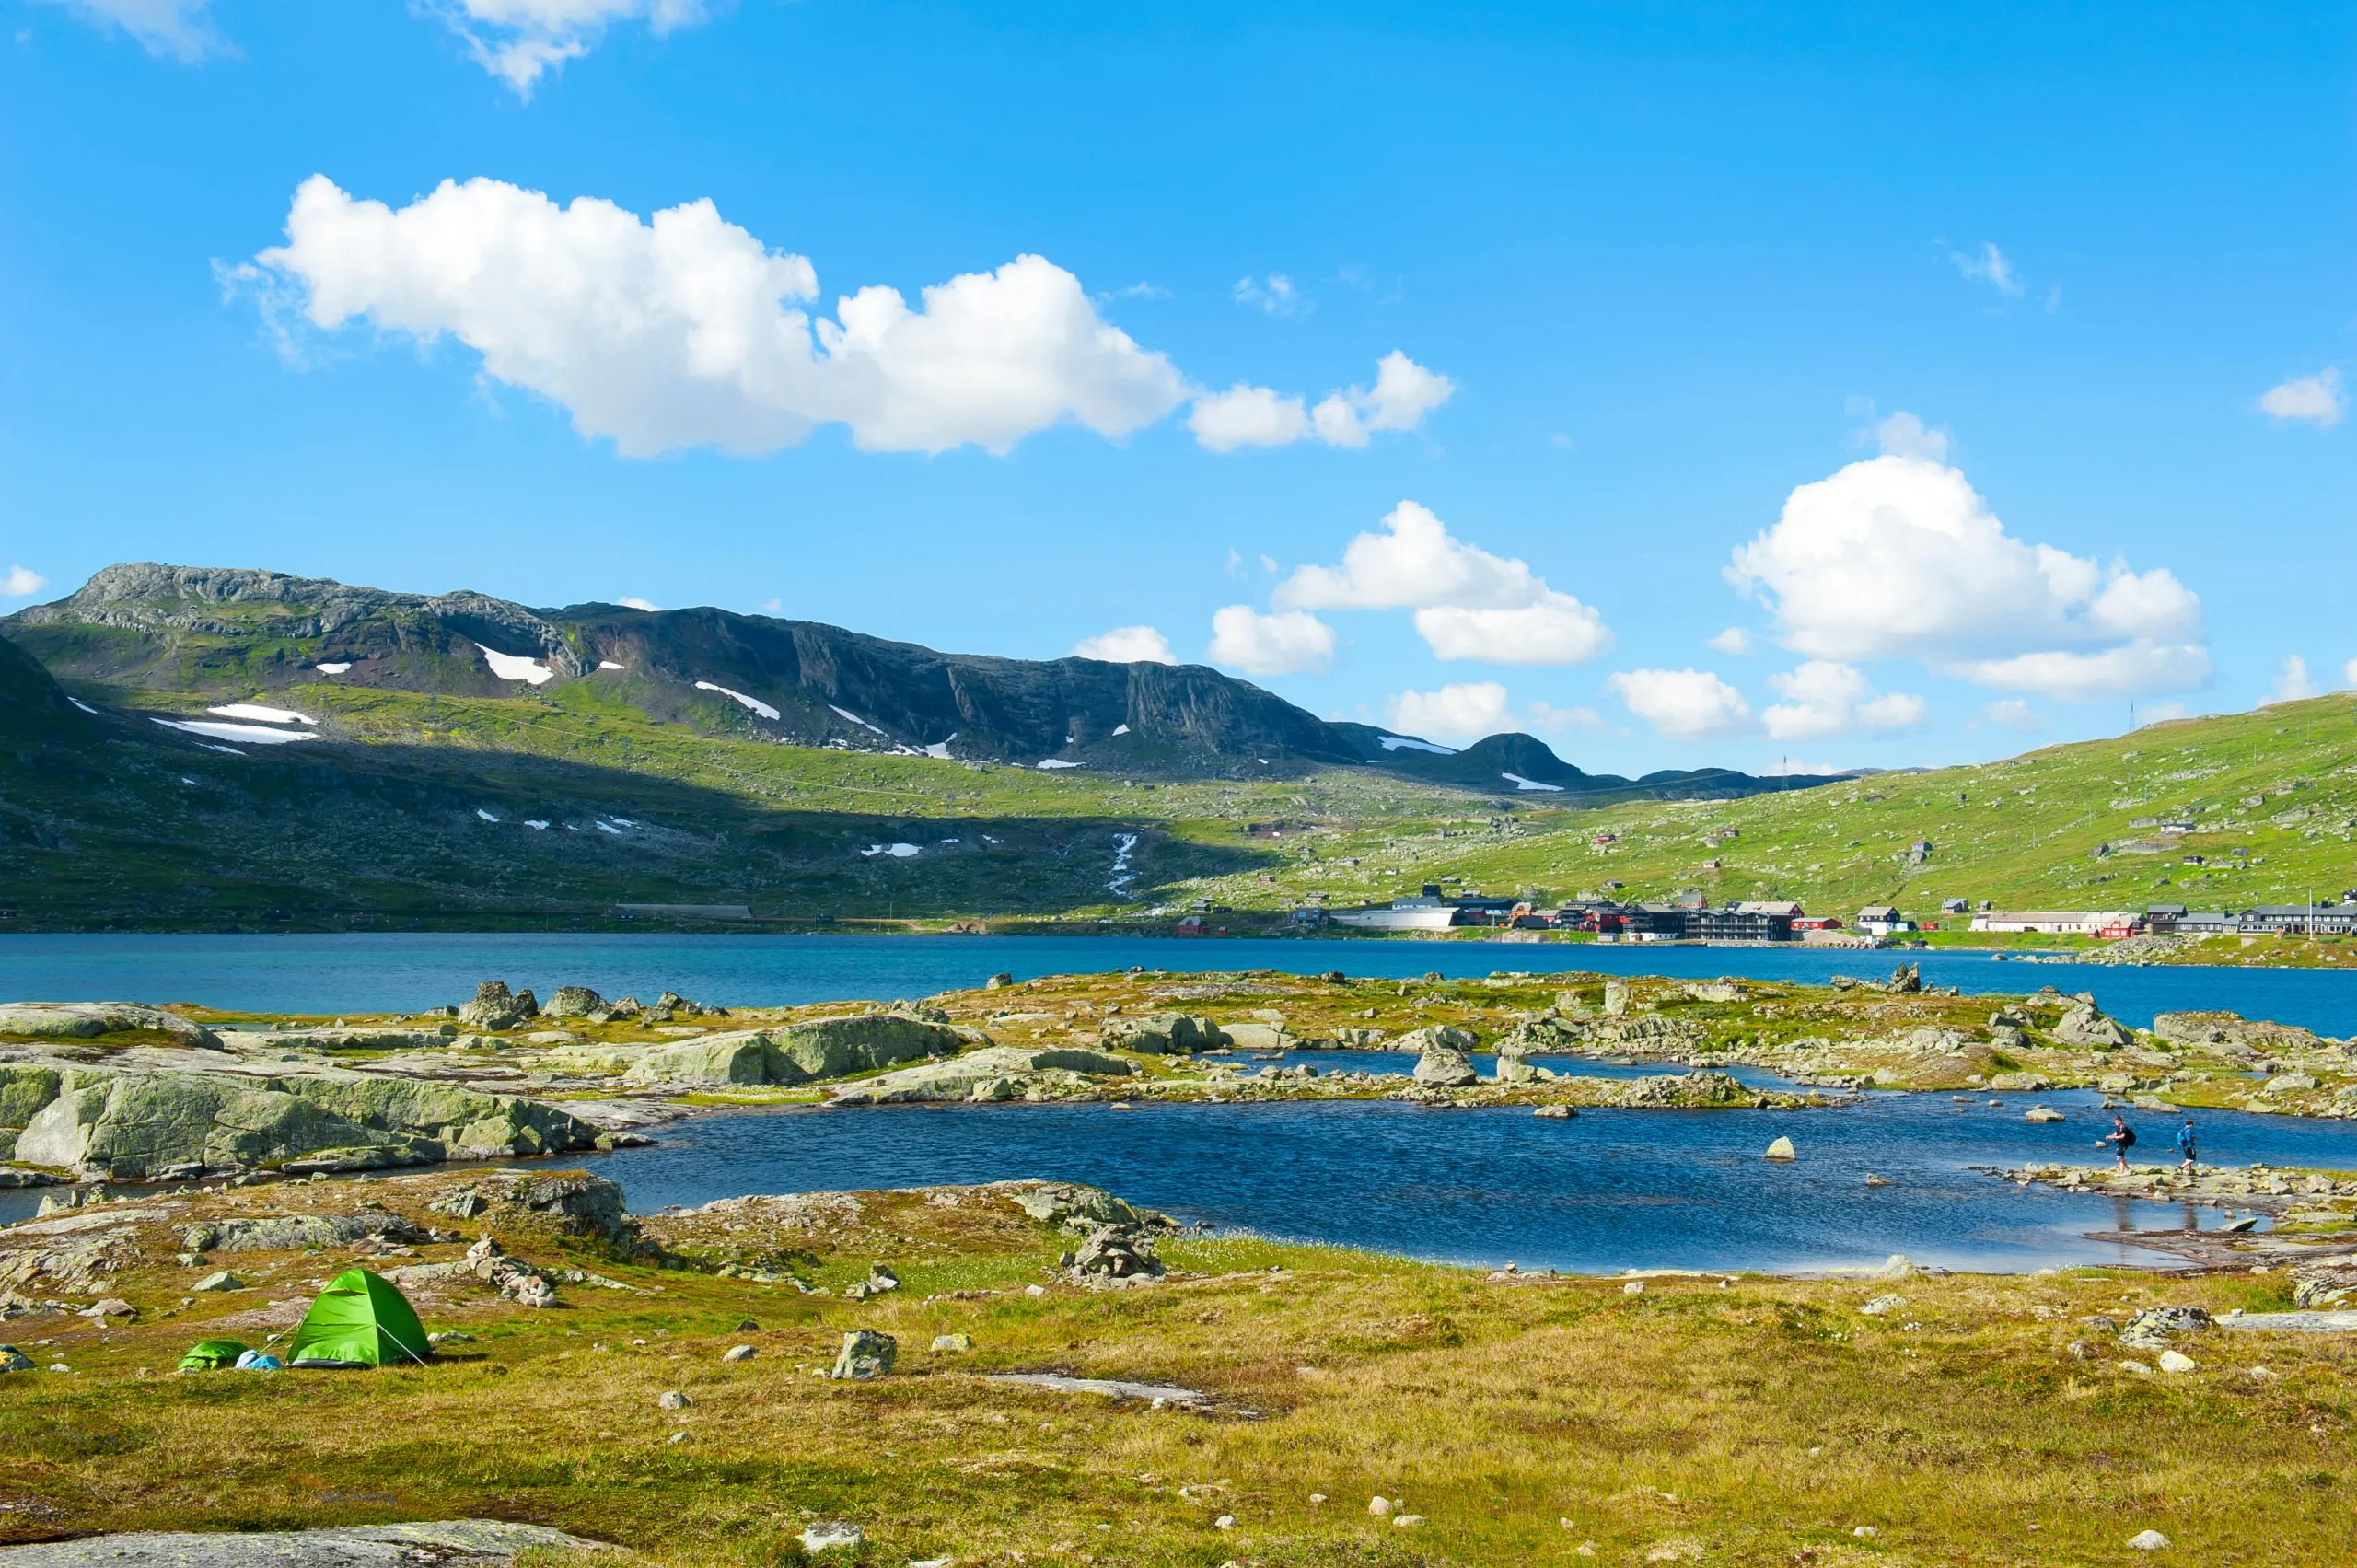 Mooi landschap met groene tent in Finse, Noorwegen op 28 juli 2019